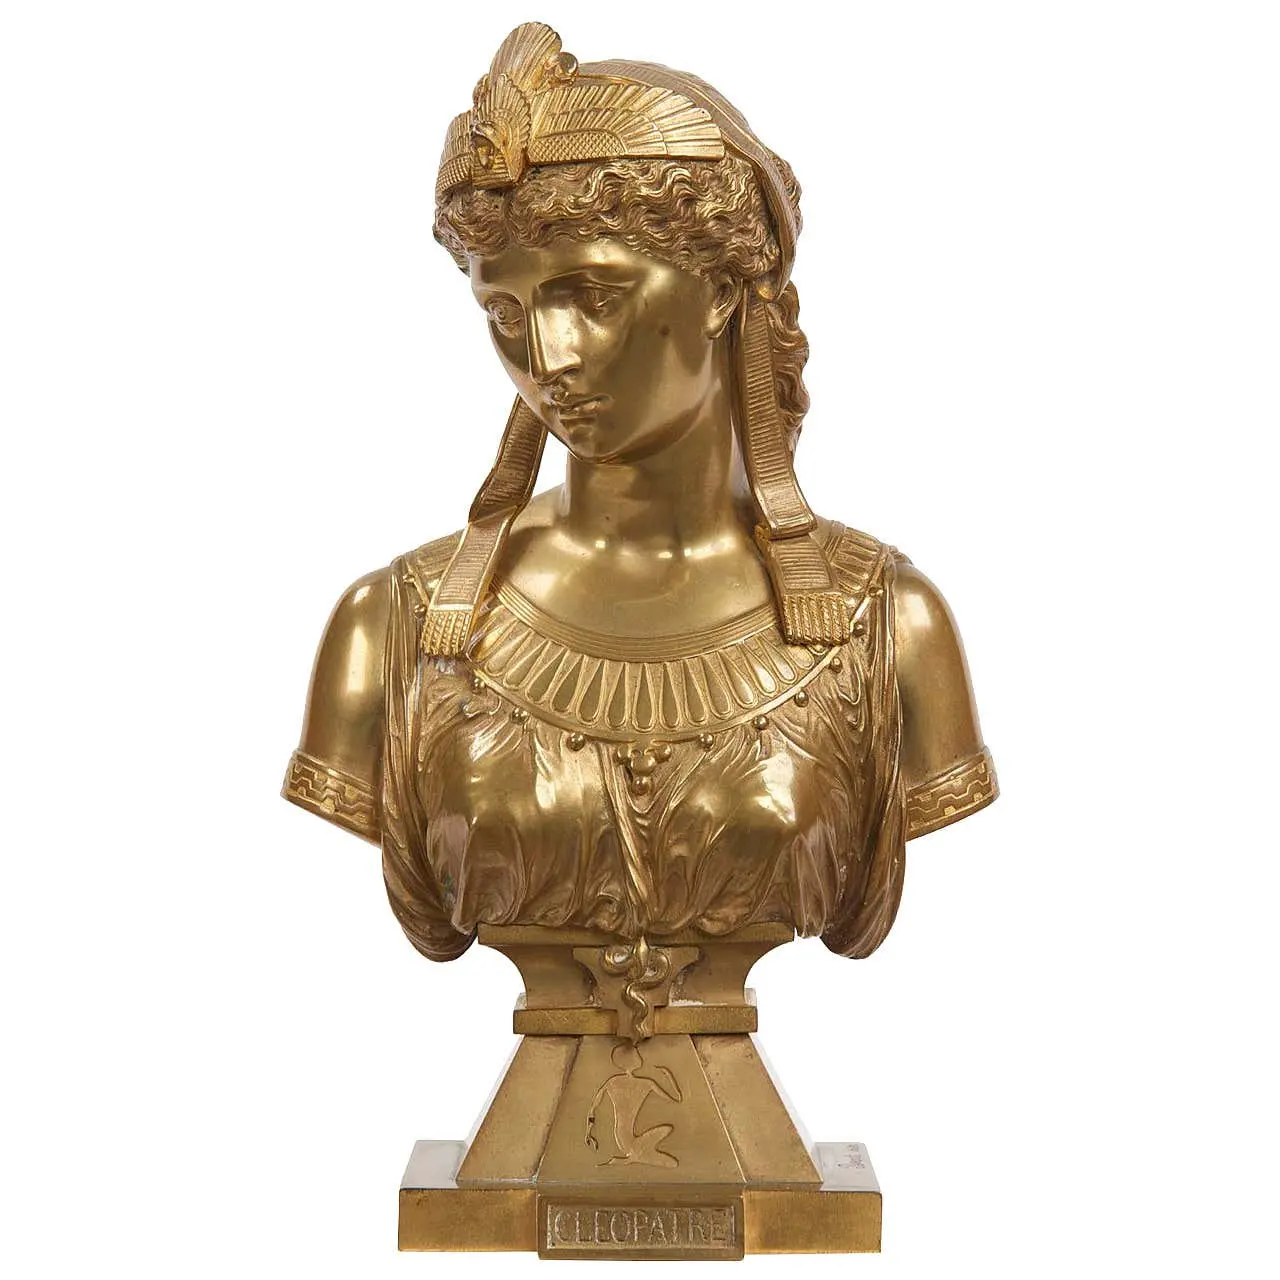 Busto de mujer egipcia de bronce, escultura artística de Metal, tamaño real